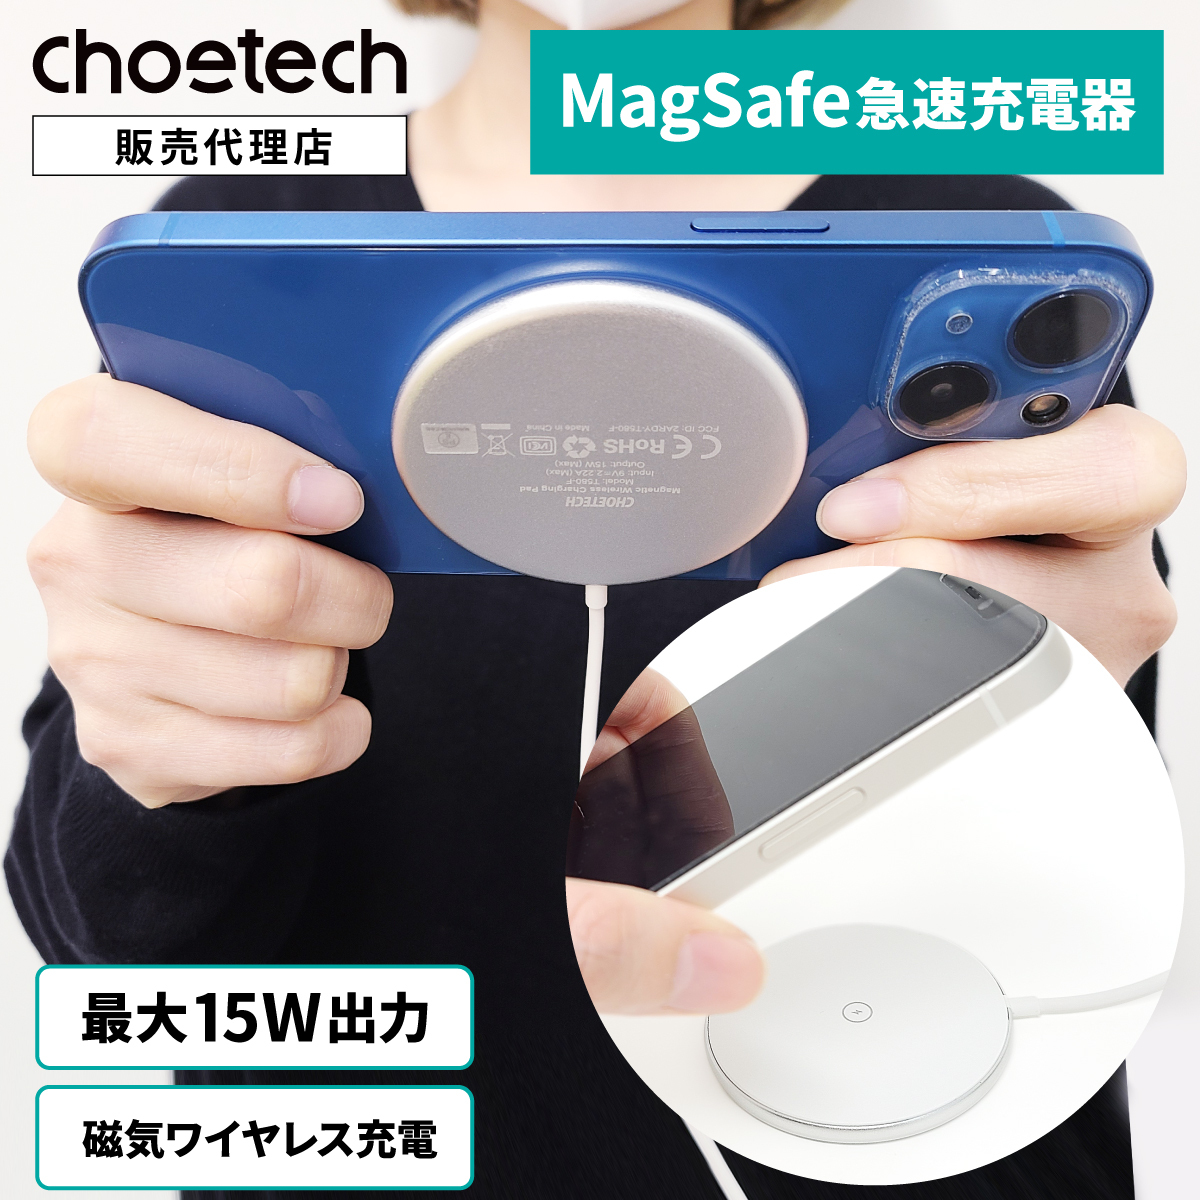 MagSafe 対応 ワイヤレス充電器 CHOETECH マグネット式 iPhone13 12 急速充電 最大15W出力 Qi 磁気吸着 PSE認証  薄型 軽量 マグセーフ ワイヤレスチャージャー :su220020:Trend Labo - 通販 - Yahoo!ショッピング